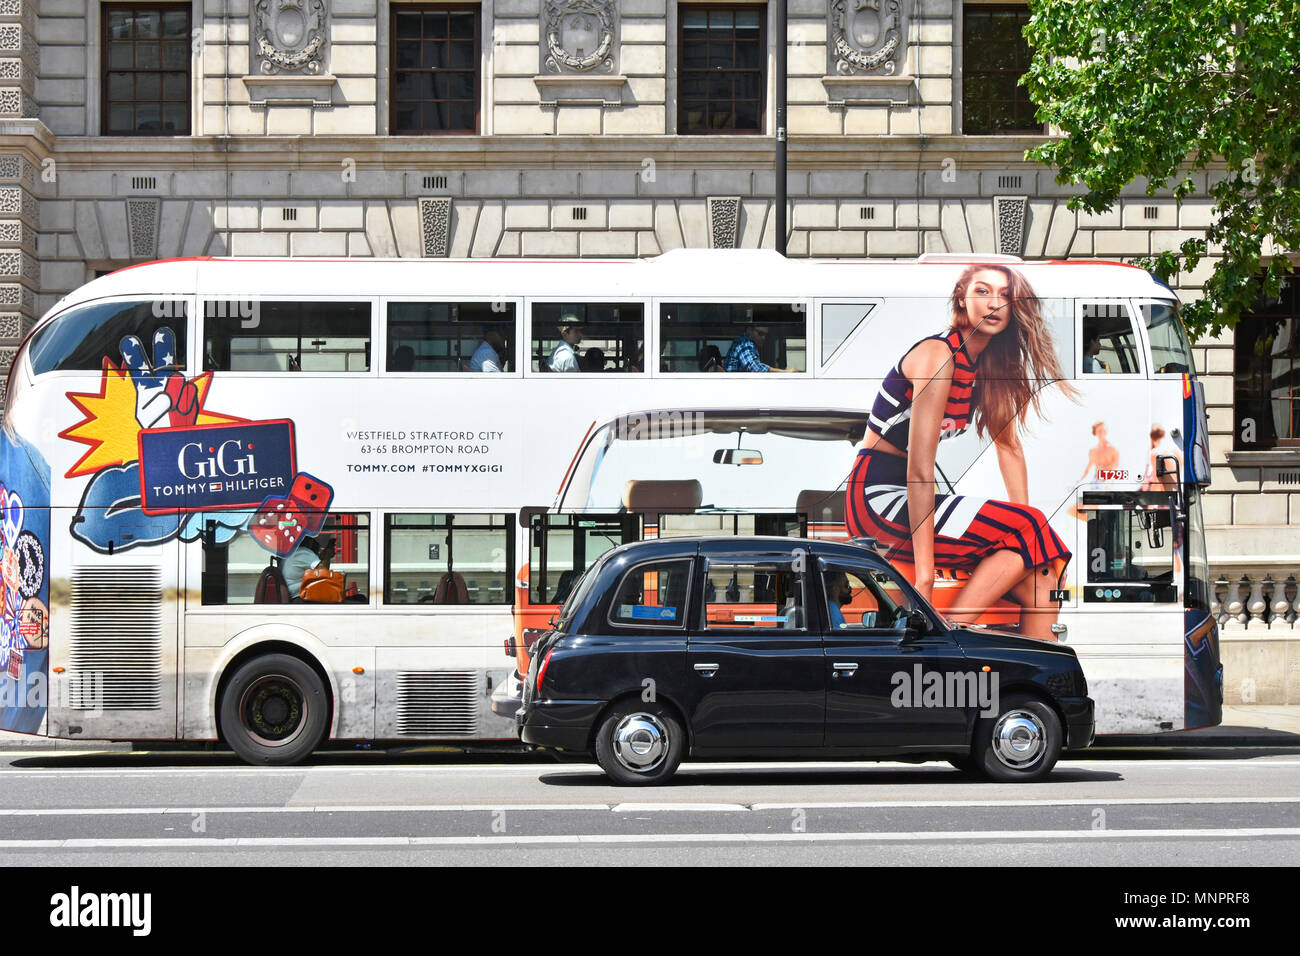 Londres Whitehall Street Scene black cab pasando publicidad vista lateral de buses de transporte público de Londres con la moda modelo sentado en frente de taxi UK Foto de stock